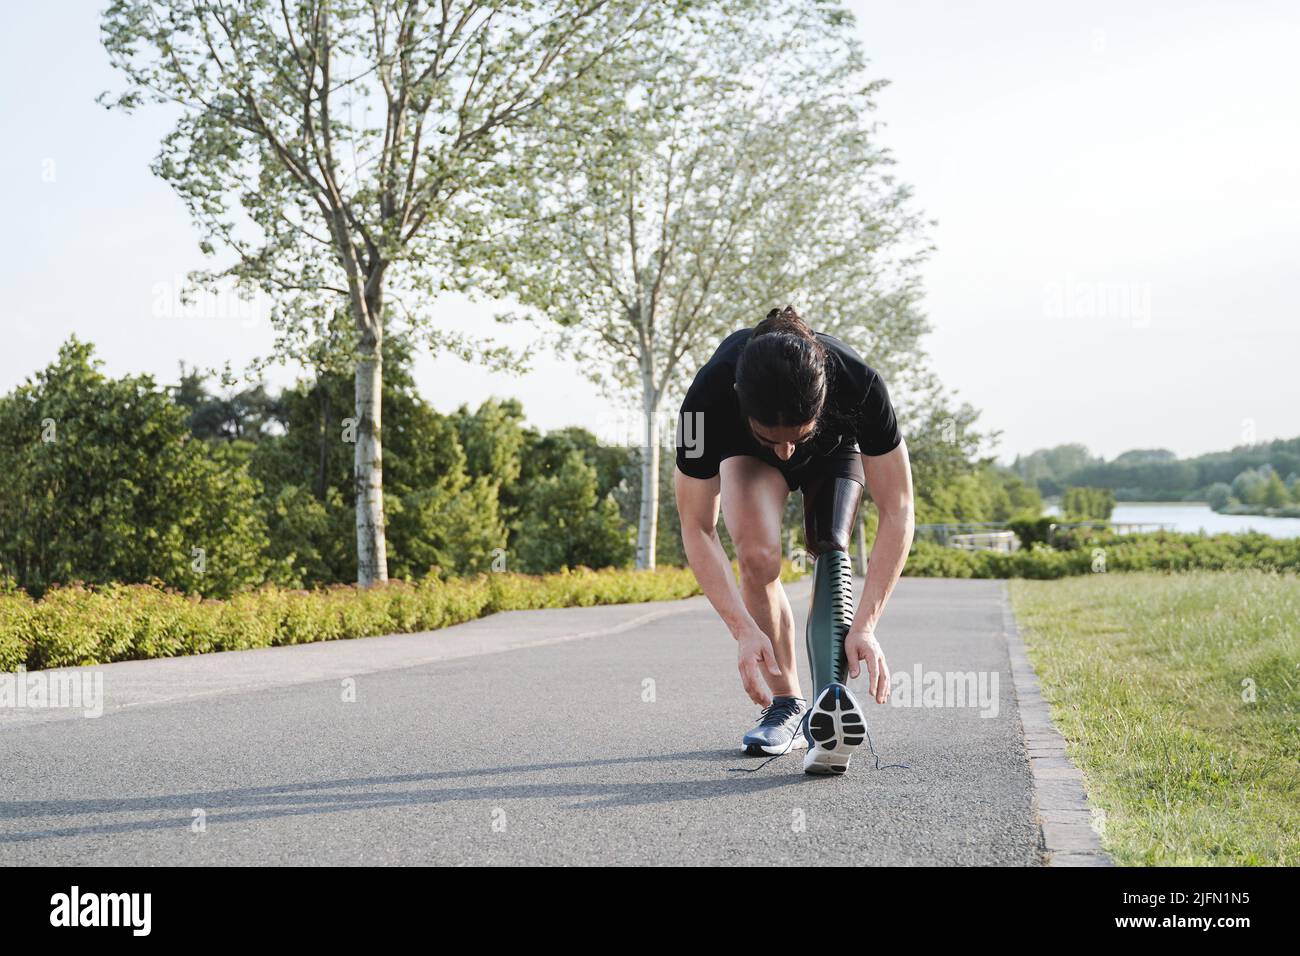 Sportmann mit körperlicher Behinderung Vorbereitung für das Training Routine im Freien - Fokus auf Prothesen Bein Stockfoto